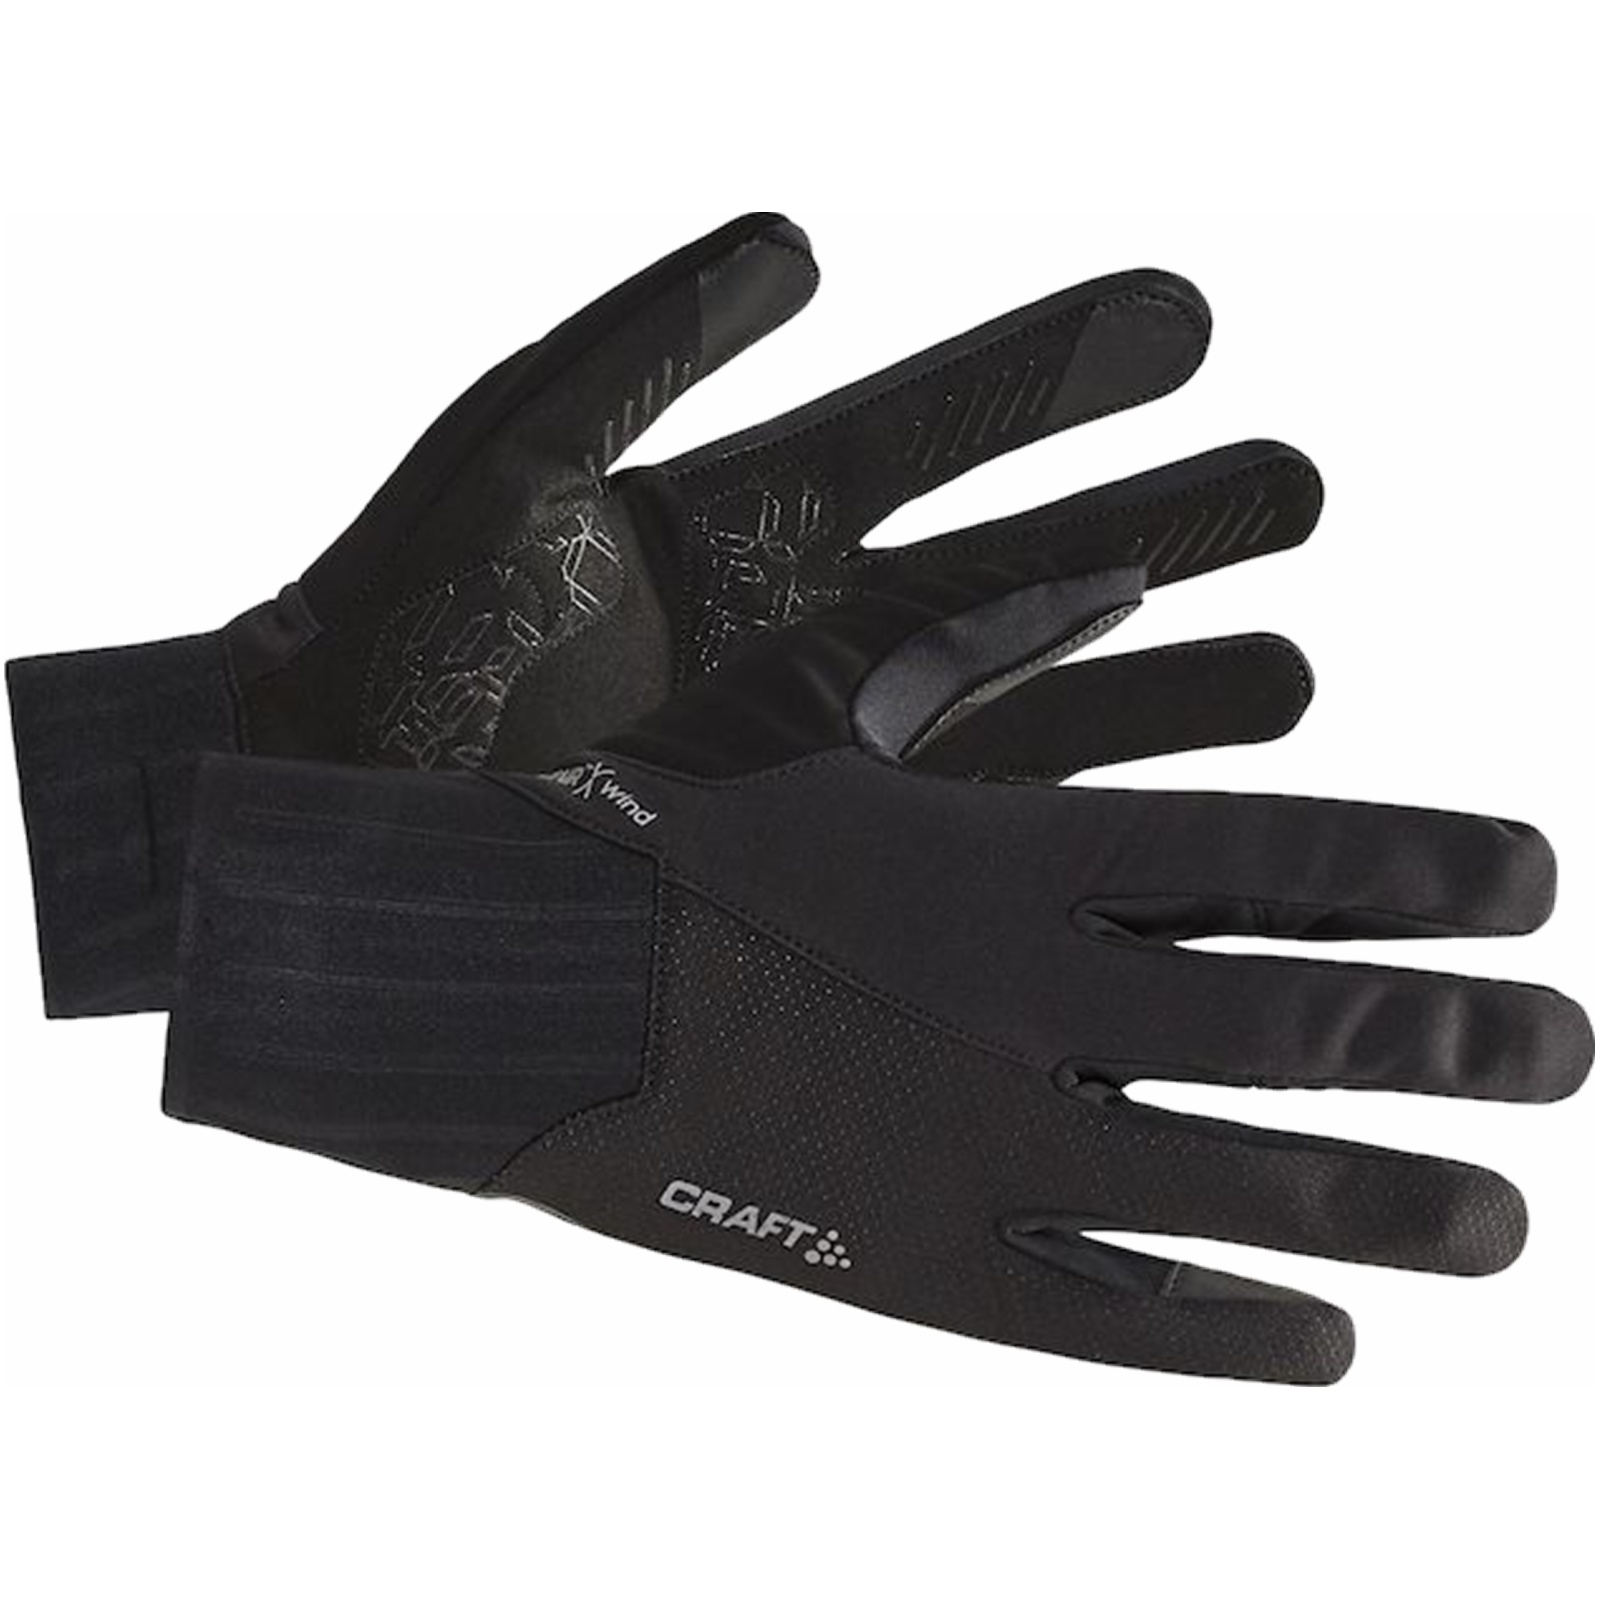 Beukende tekort doorgaan met Craft All weather gloves - de ideale sporthandschoen! - Thermowear